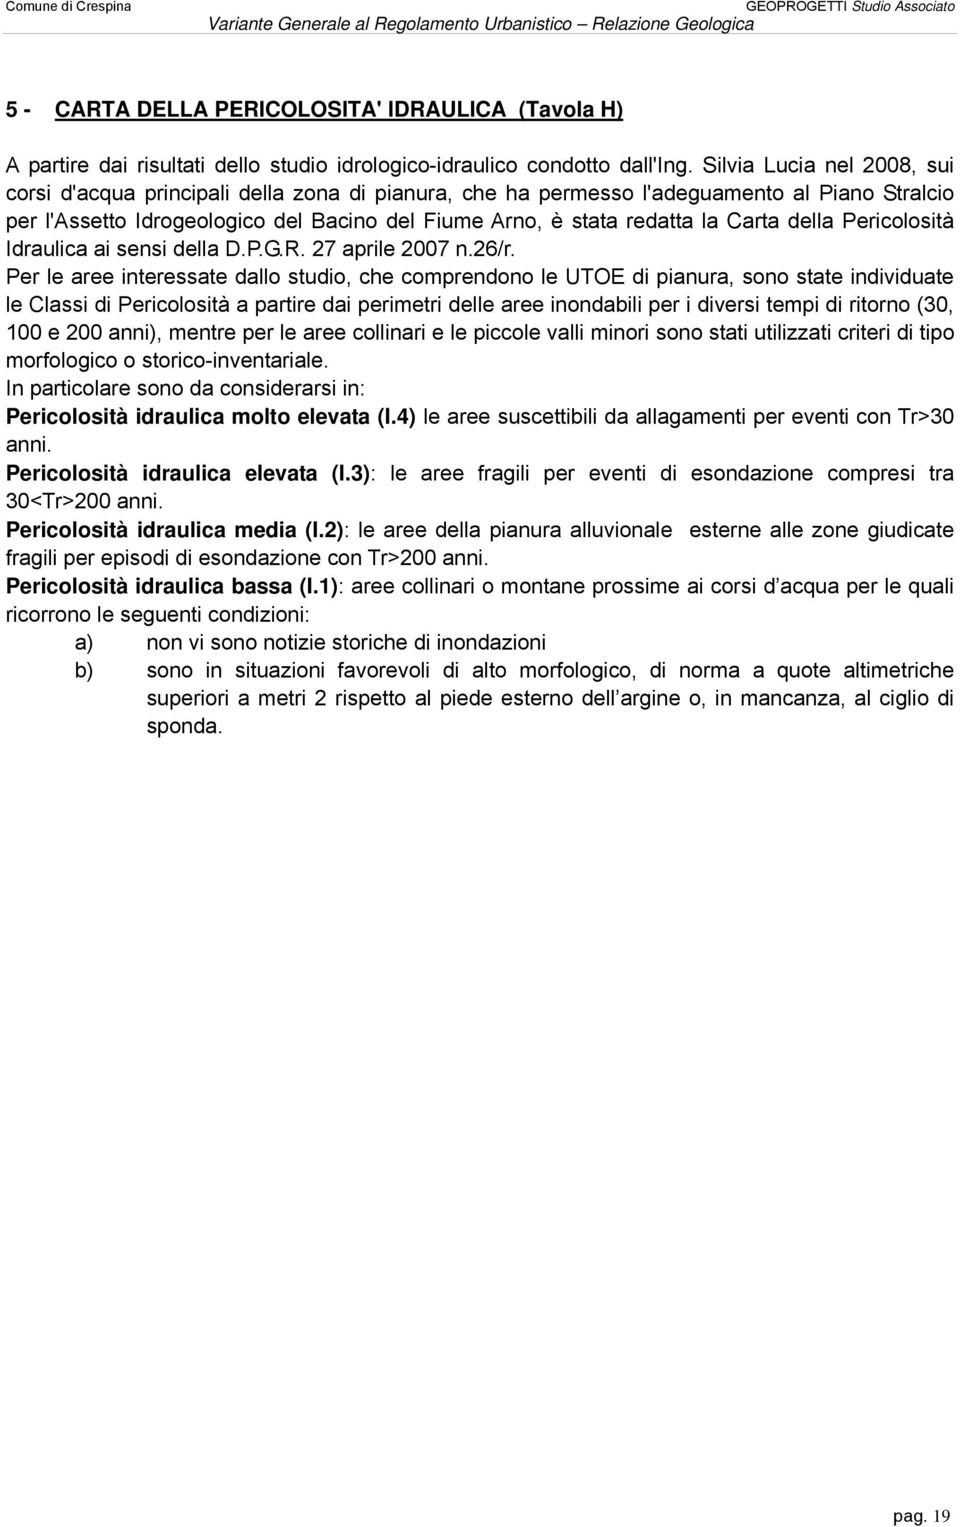 Carta della Pericolosità Idraulica ai sensi della D.P.G.R. 27 aprile 2007 n.26/r.